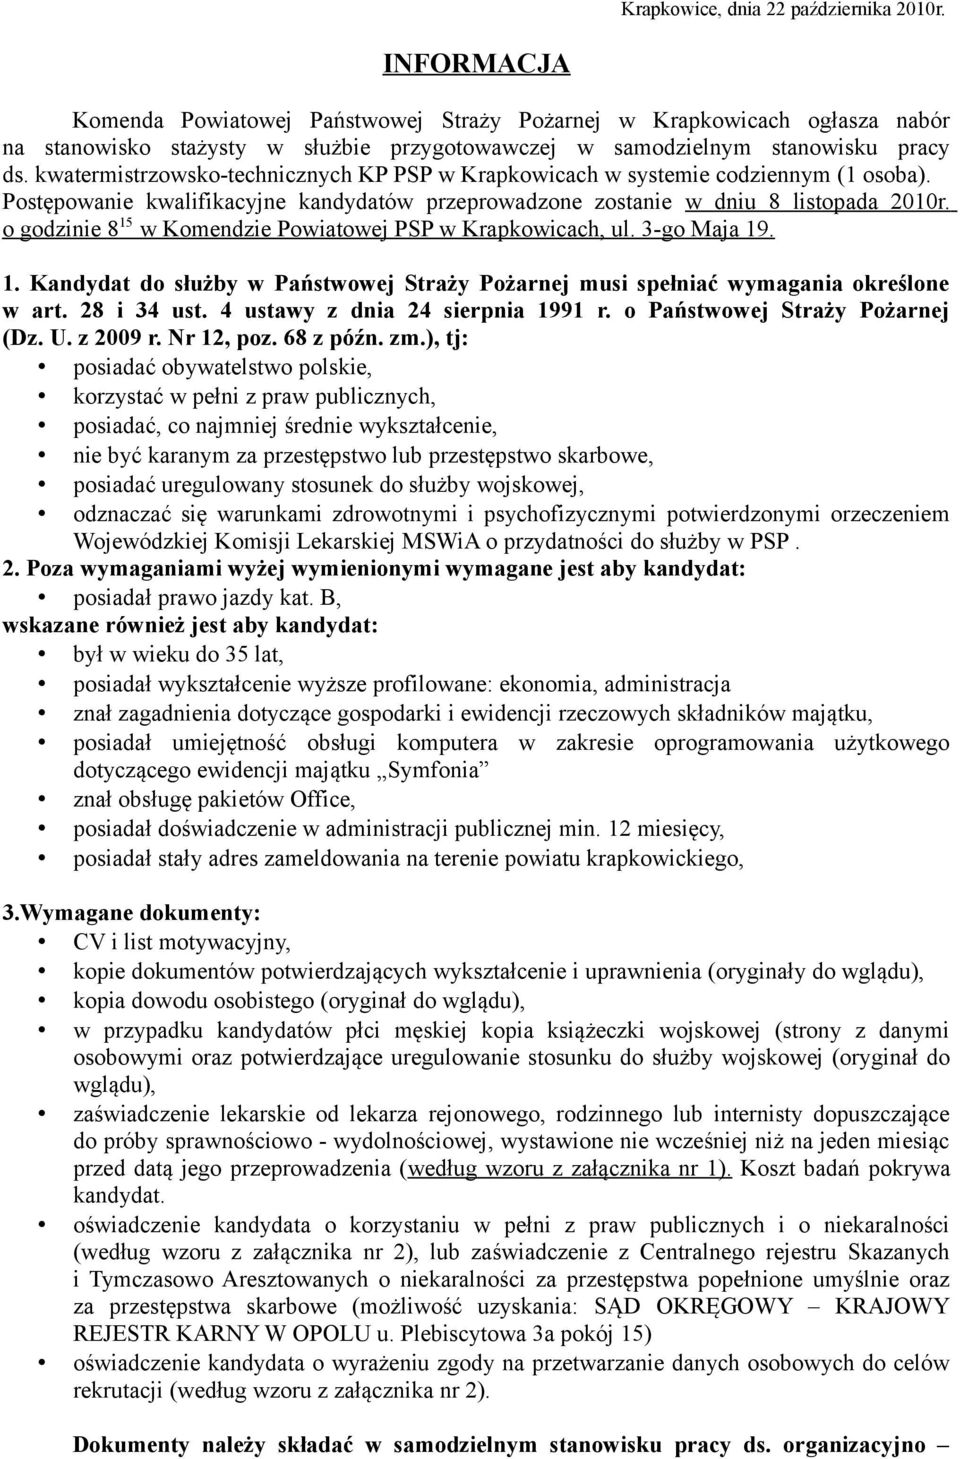 kwatermistrzowsko-technicznych KP PSP w Krapkowicach w systemie codziennym (1 osoba). Postępowanie kwalifikacyjne kandydatów przeprowadzone zostanie w dniu 8 listopada 2010r.